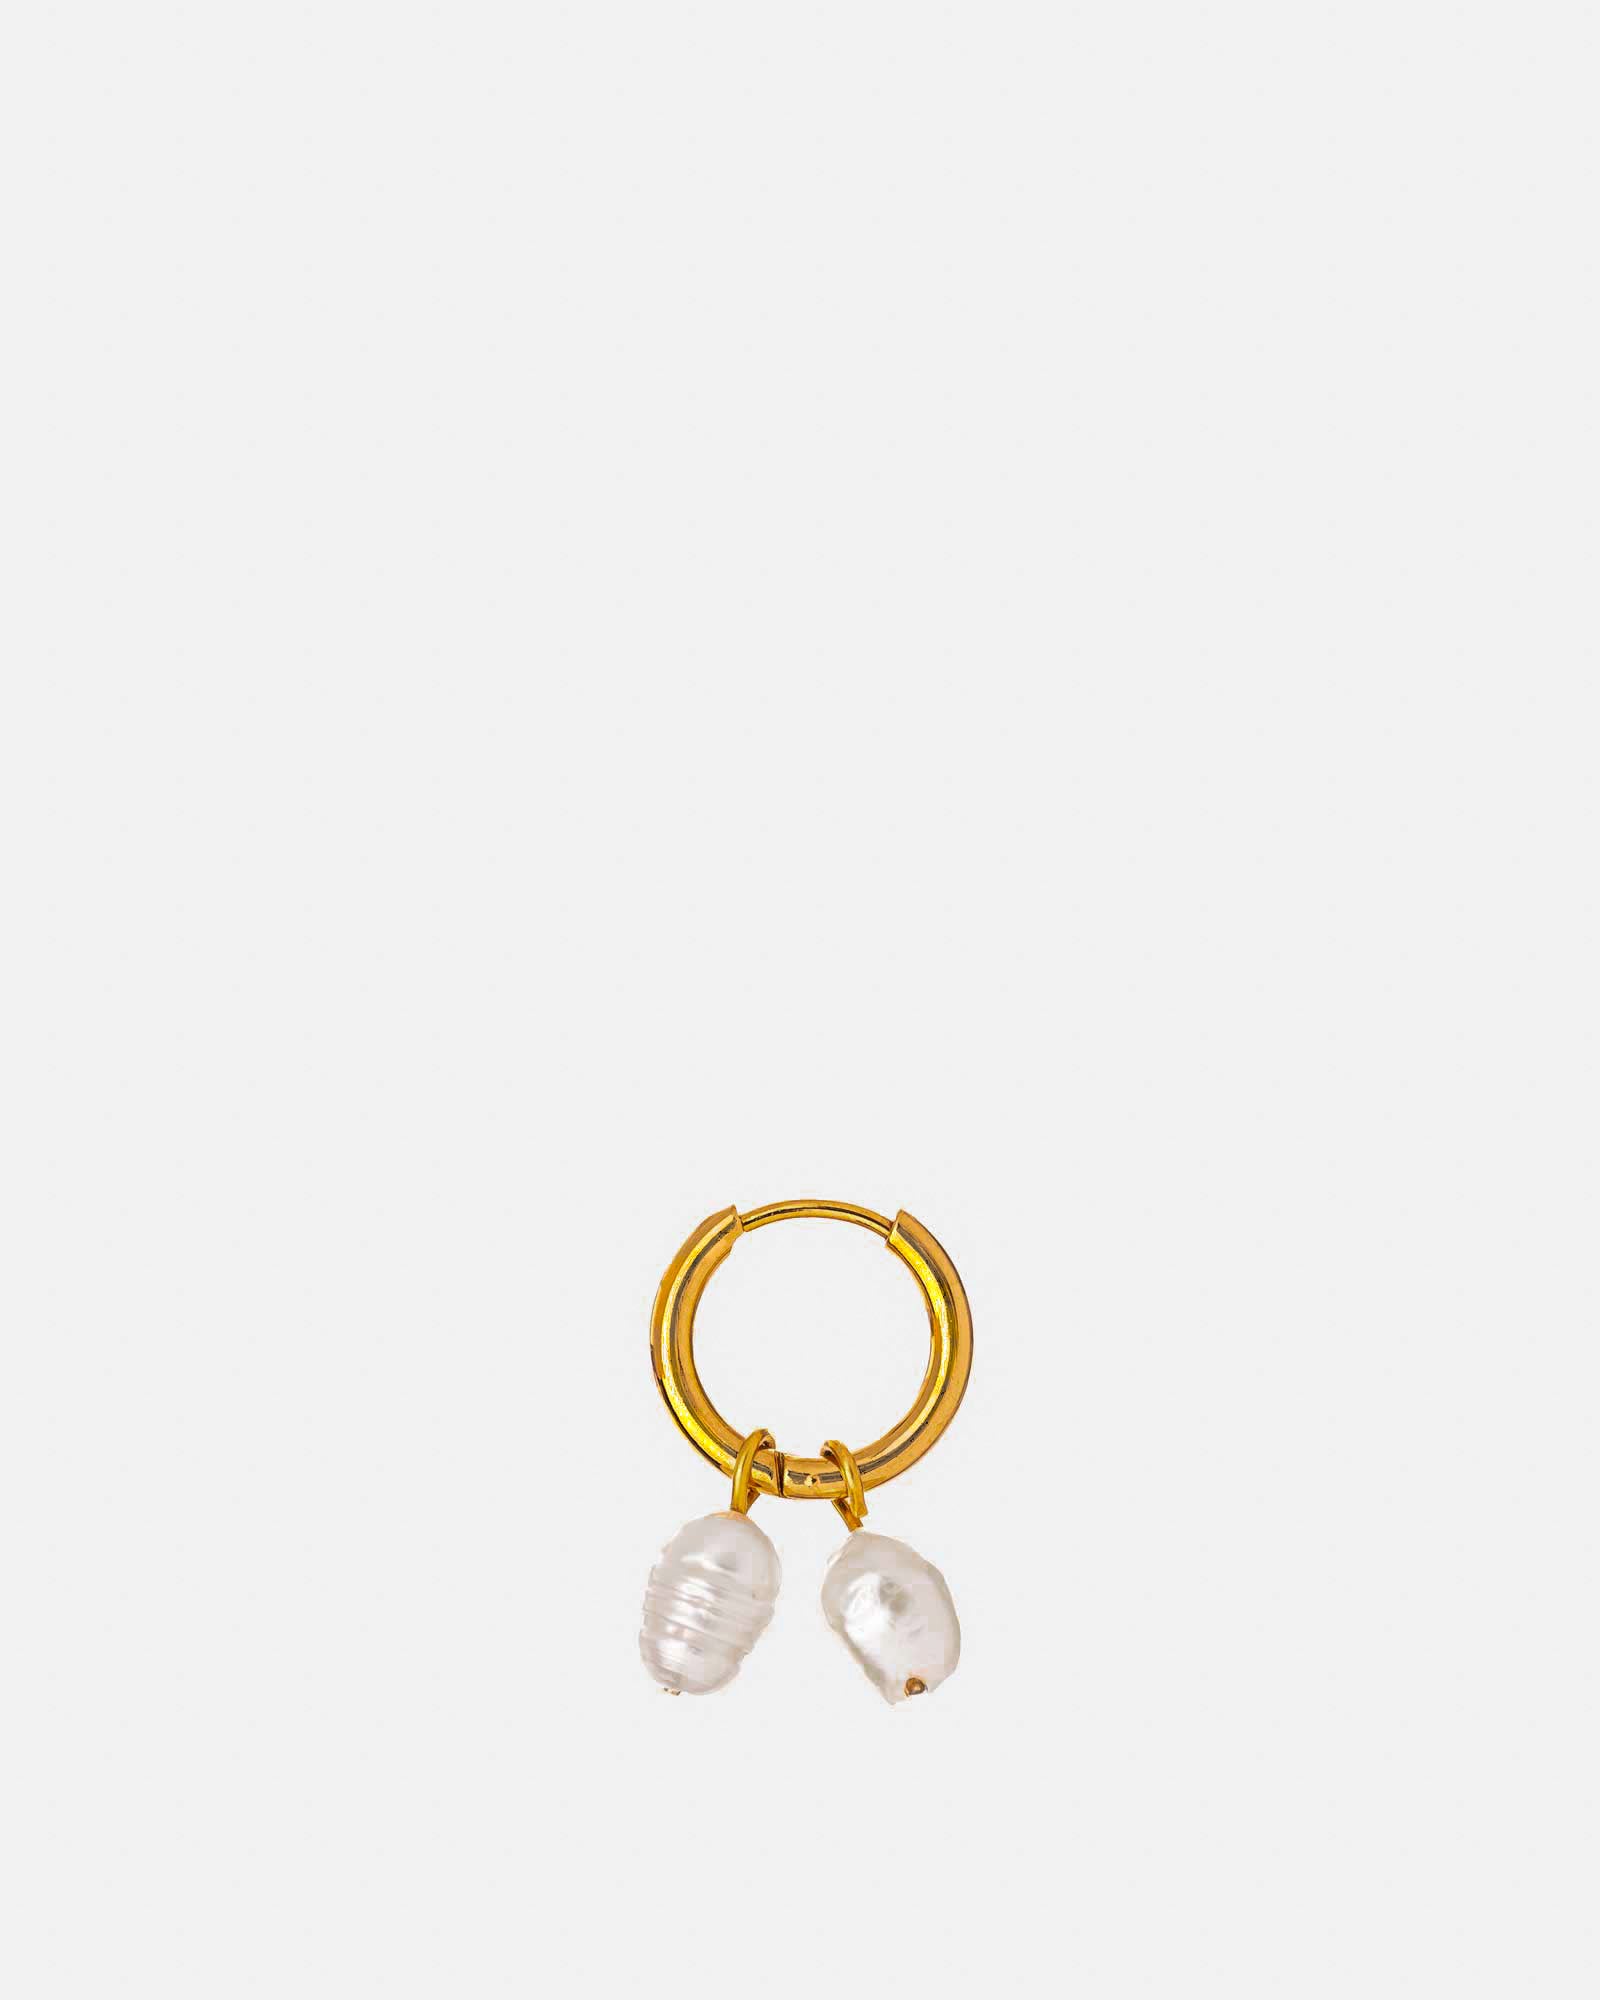 Steel Earring 'Twin Golden Pearl' - Earrings and Pendants - Dicci